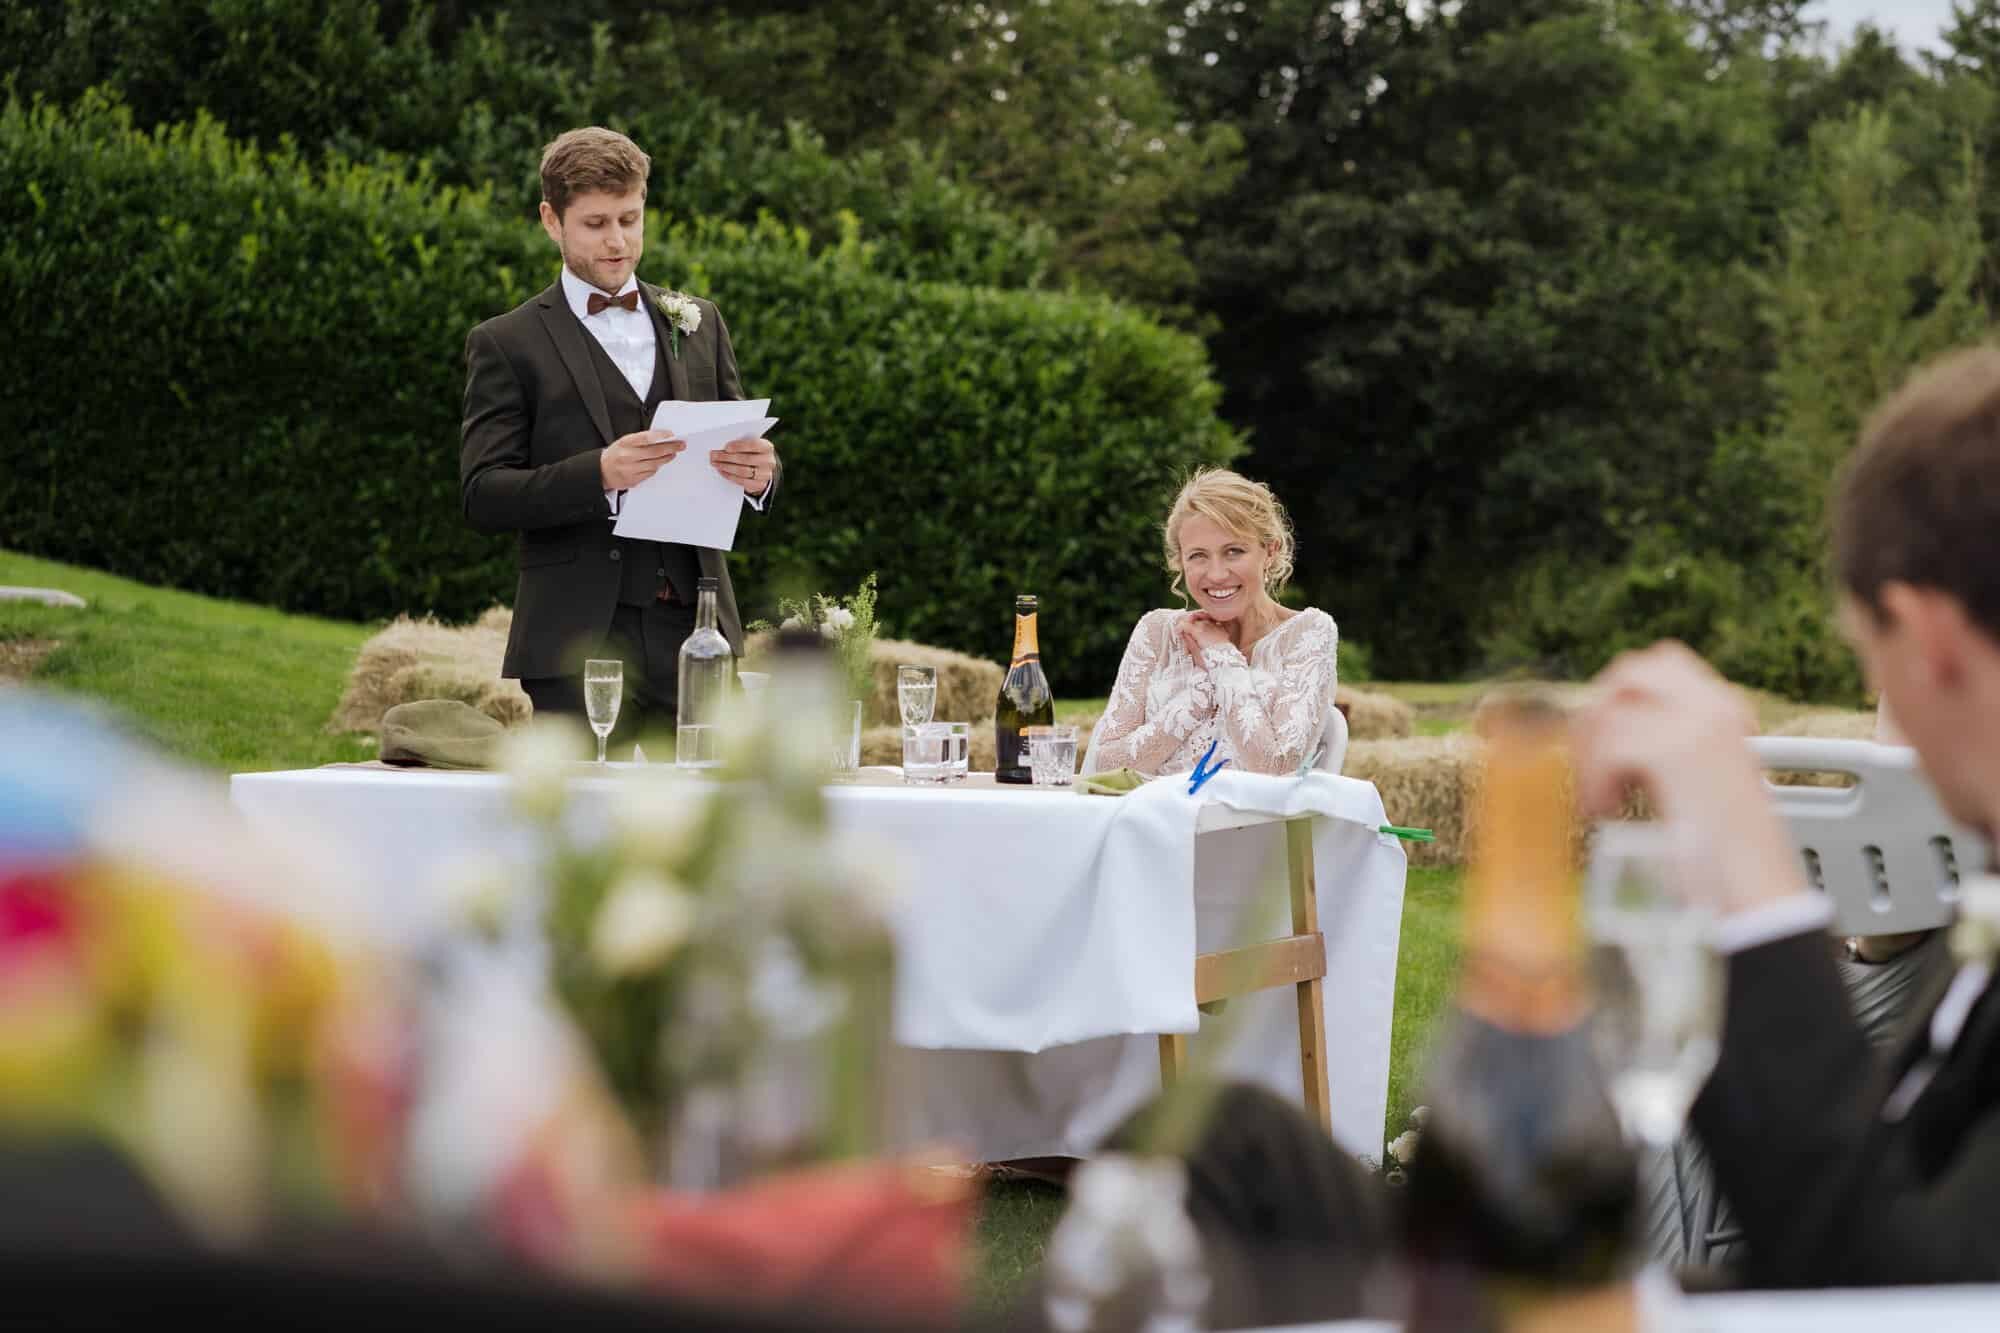 Wedding speeches in garden wedding reception